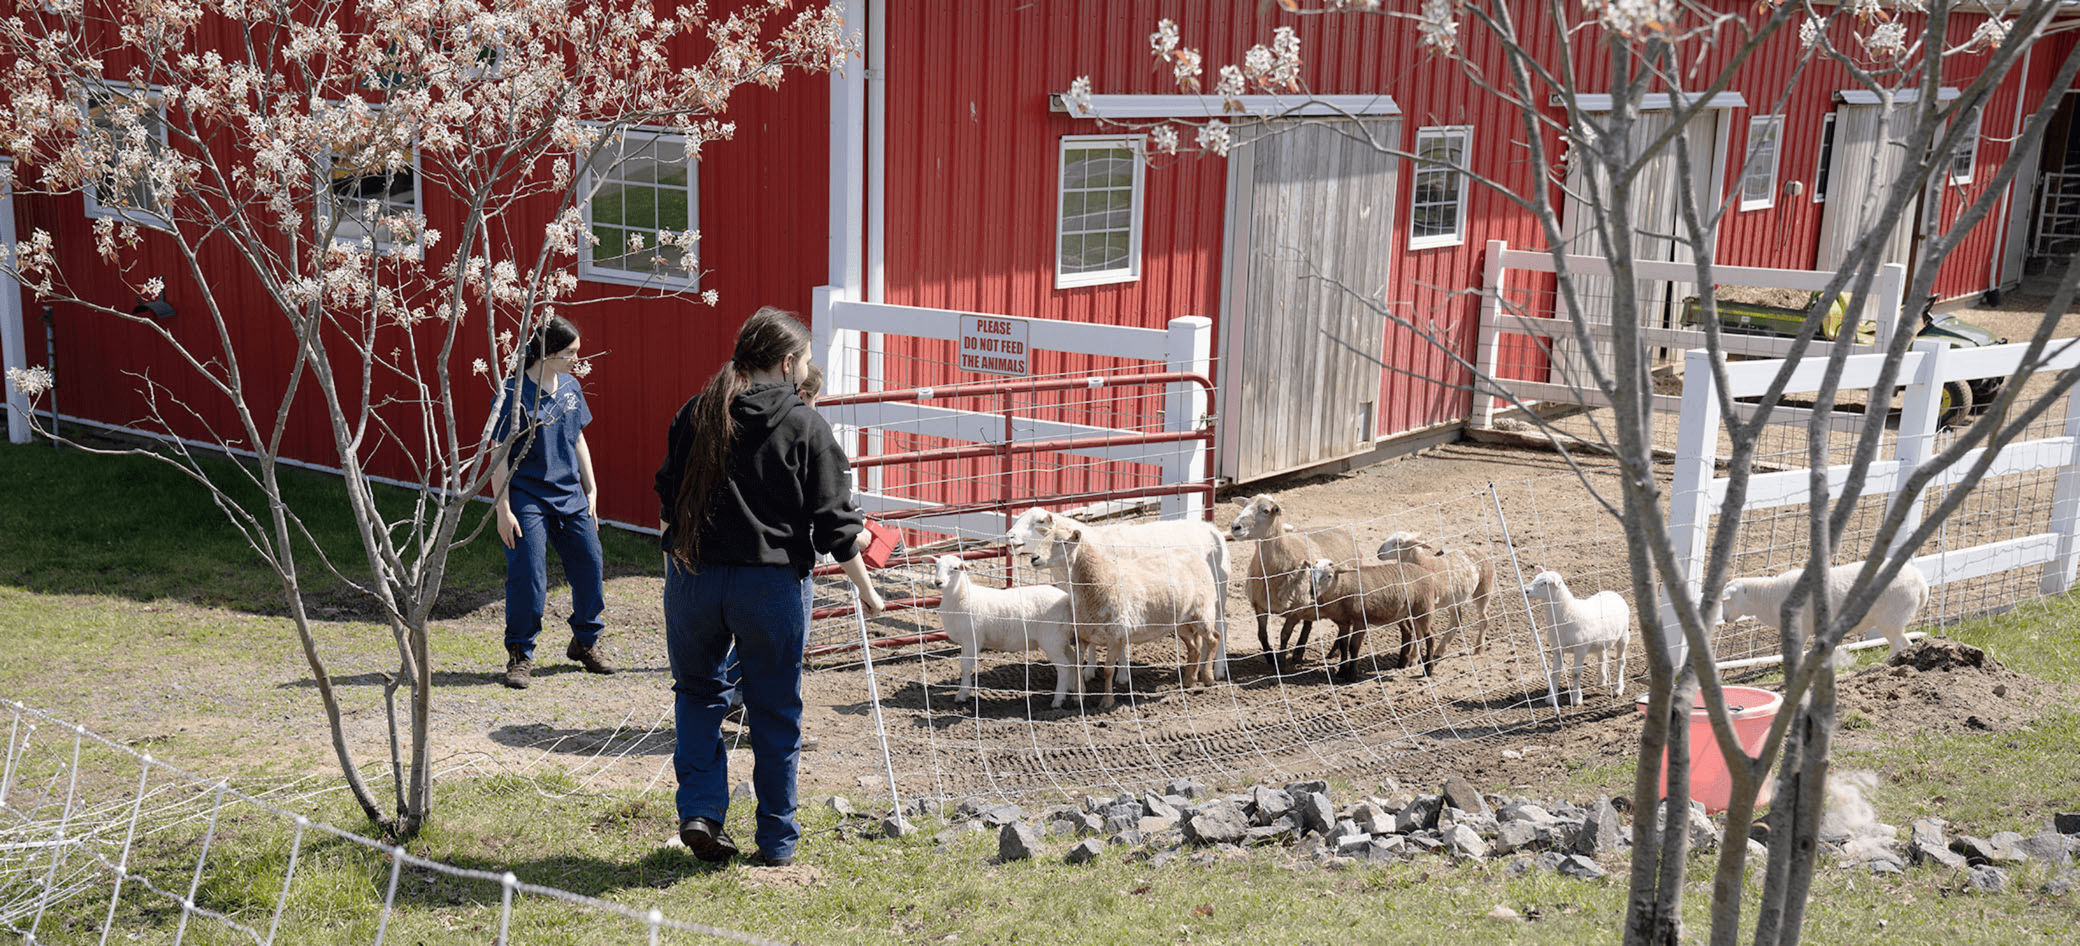 三名学生从围栏中放出一群兴奋的绵羊。